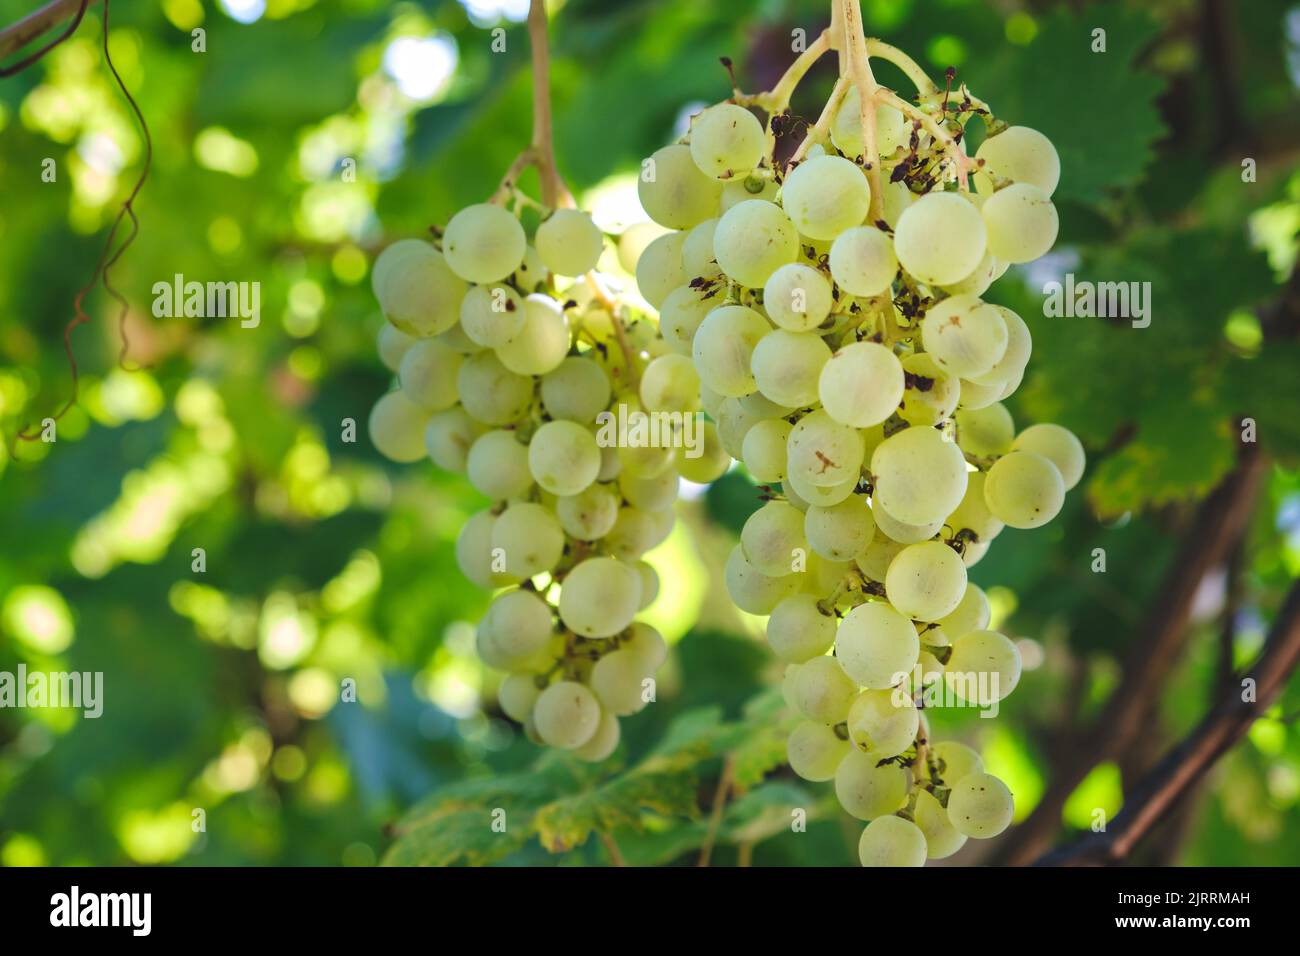 Nahaufnahme von Trauben von reifen Weißweintrauben auf Weinreben. Grüne Traube auf der Rebe im Garten. Trauben auf Weinrebe. Trauben auf der Plantage von Stockfoto